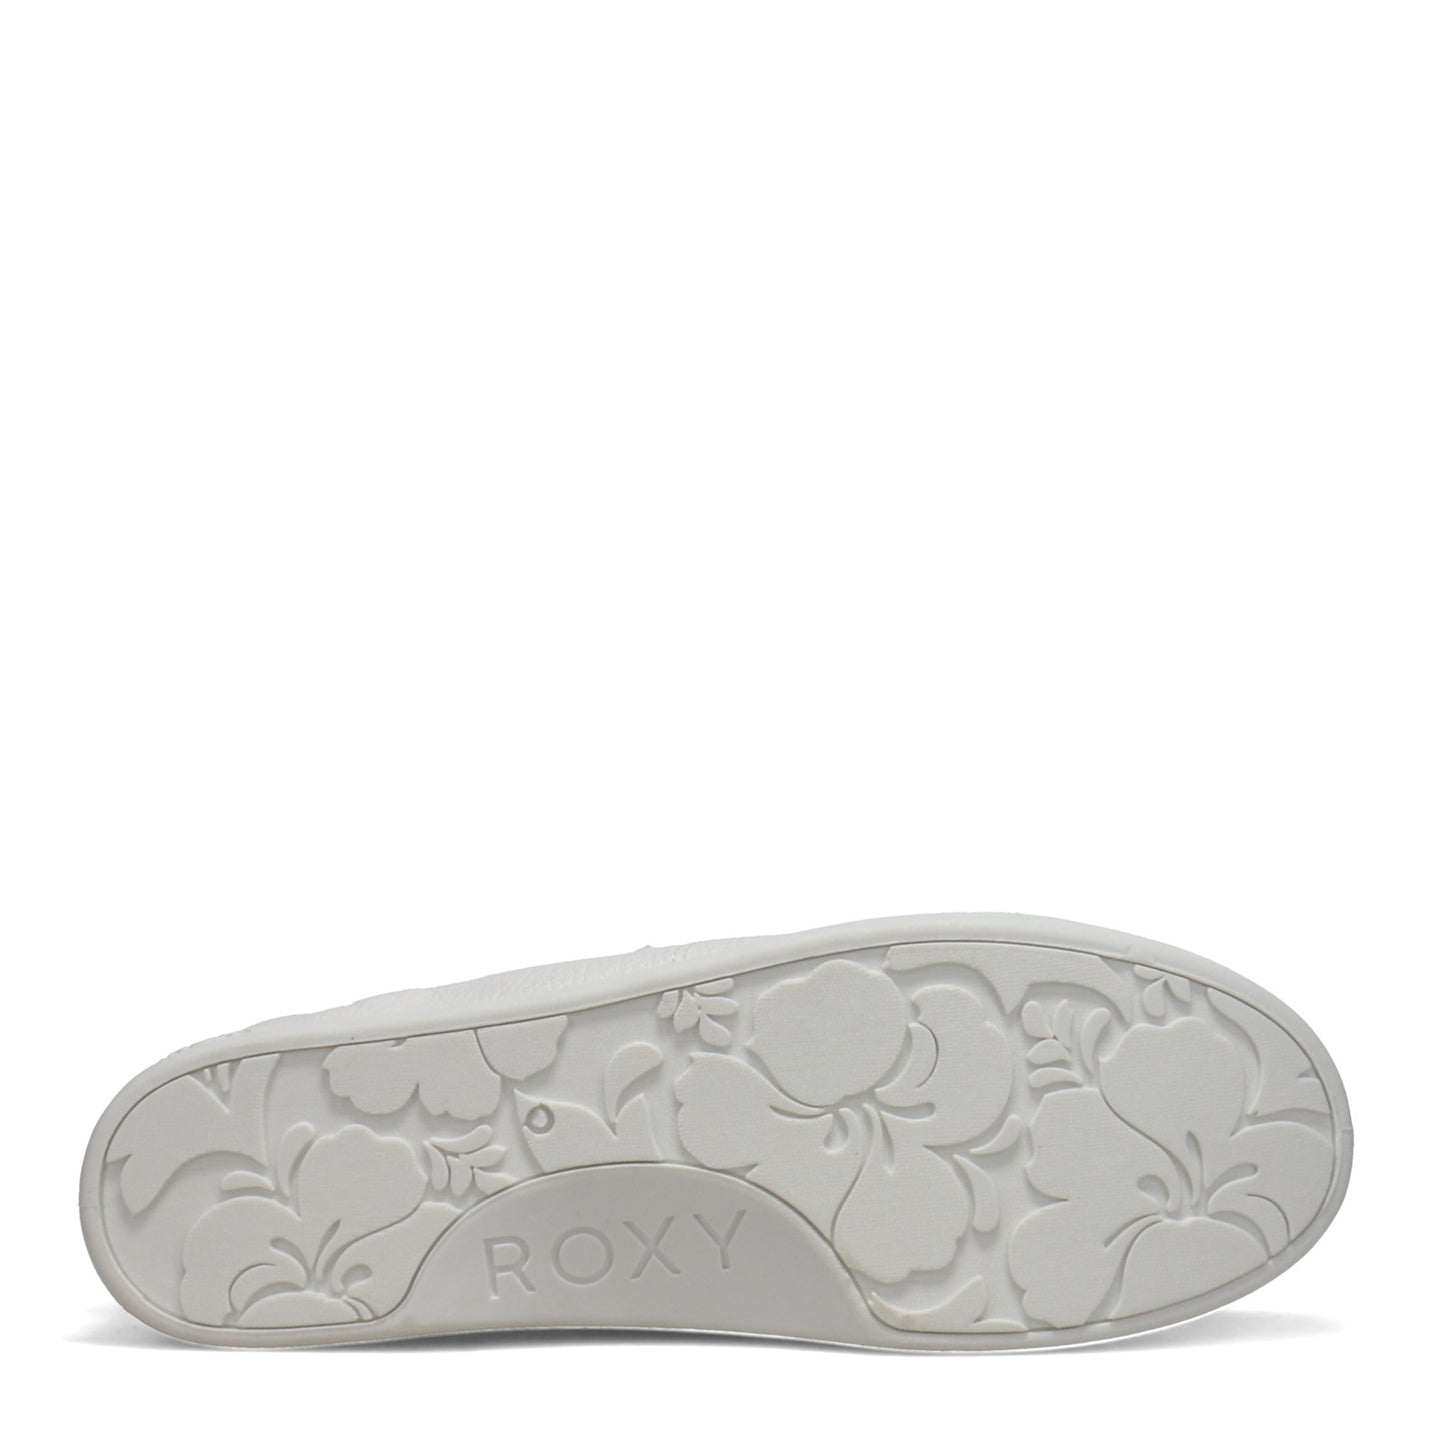 Peltz Shoes  Women's Roxy Bayshore Sneaker WHITE ARJS600418-WIM